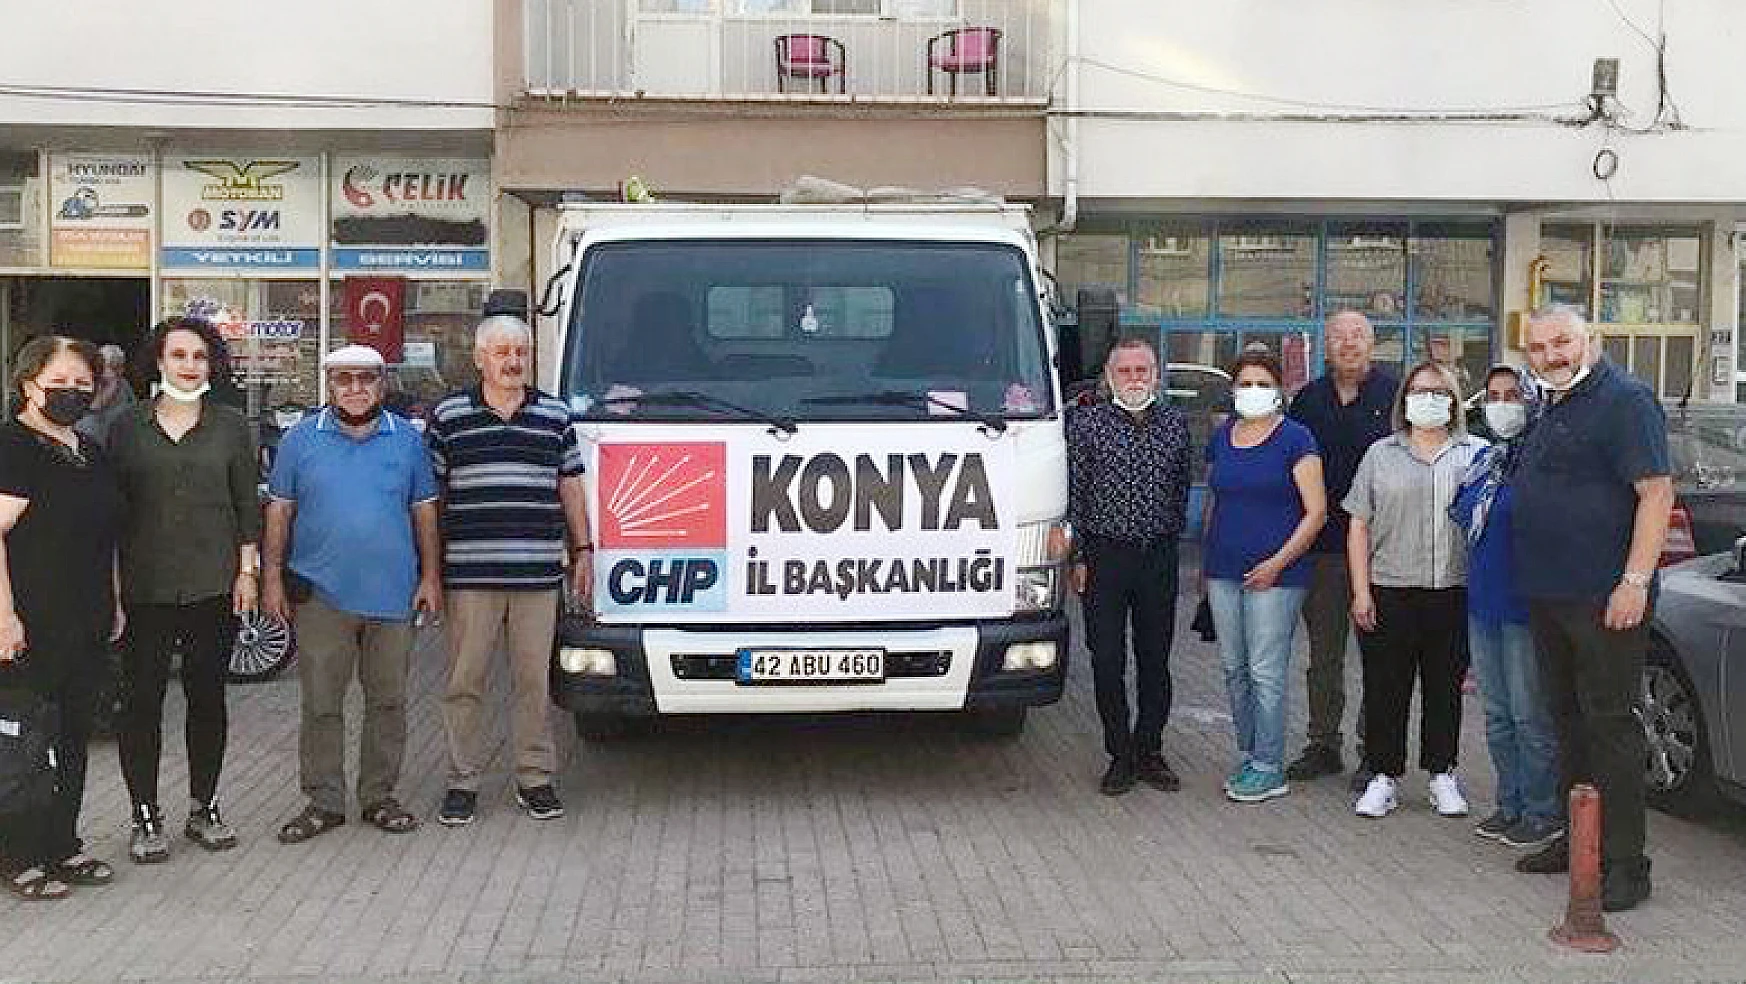 CHP Konya'dan yardım bölgesine yardım tırı